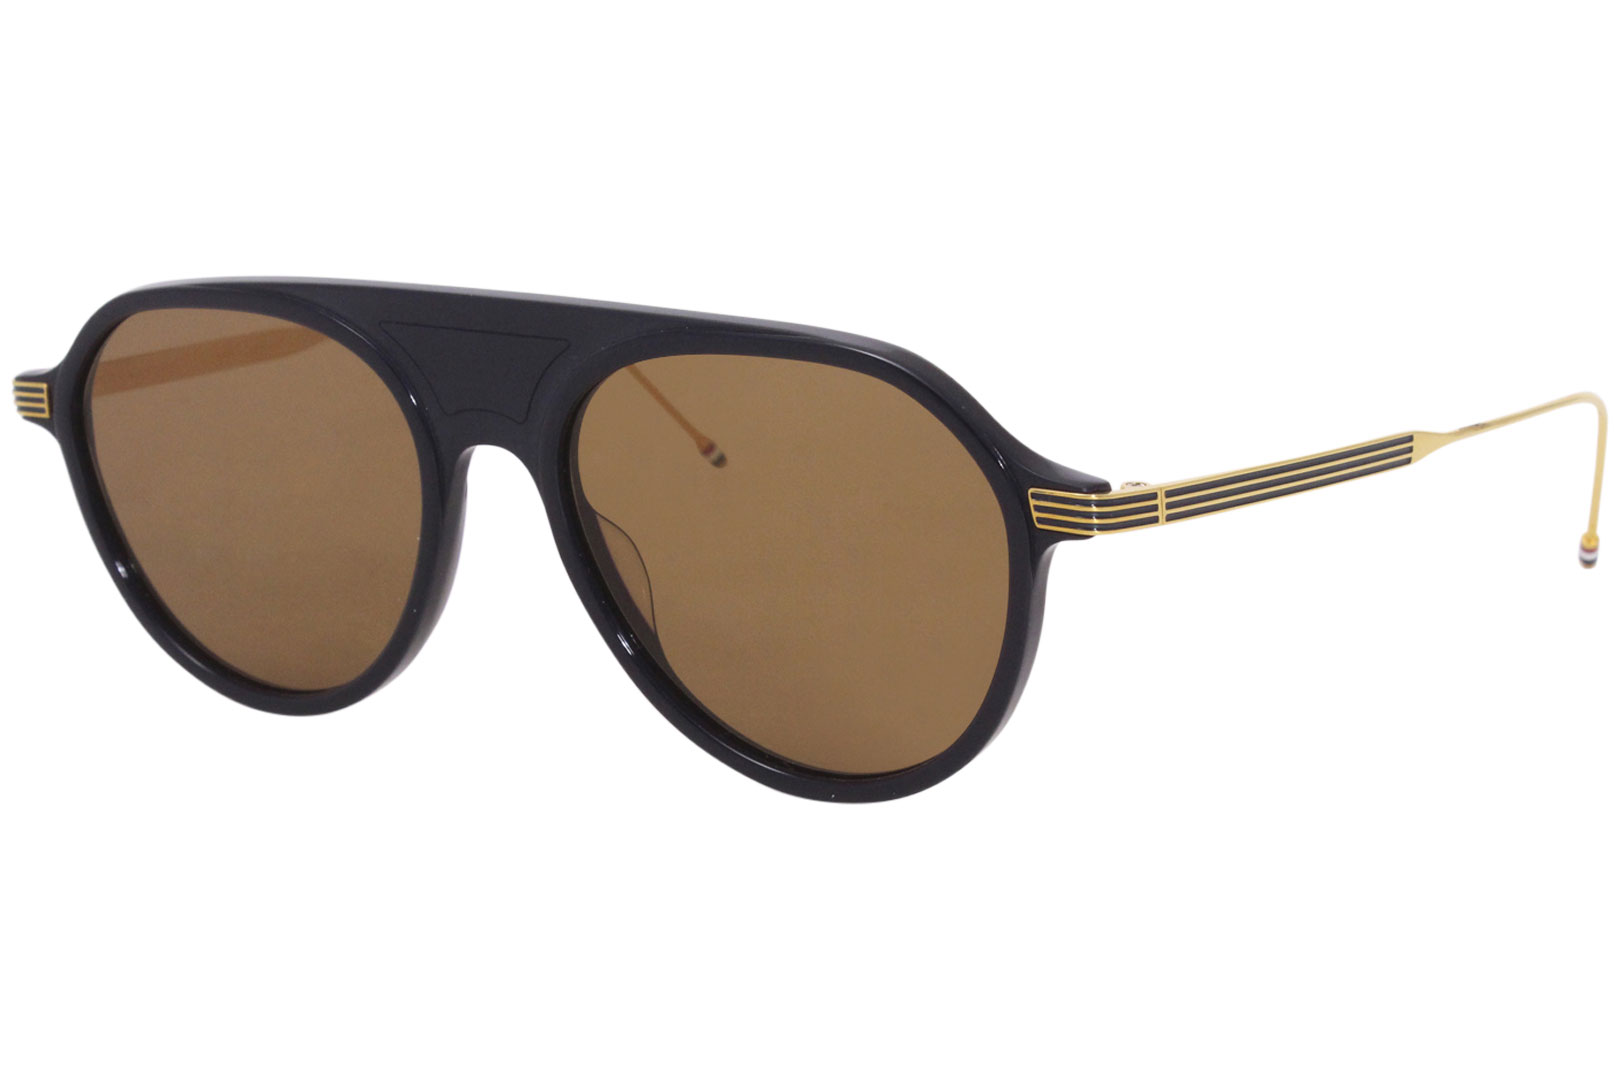 Amazing, brand new BRANDED Sunglasses - Women - 1738095361